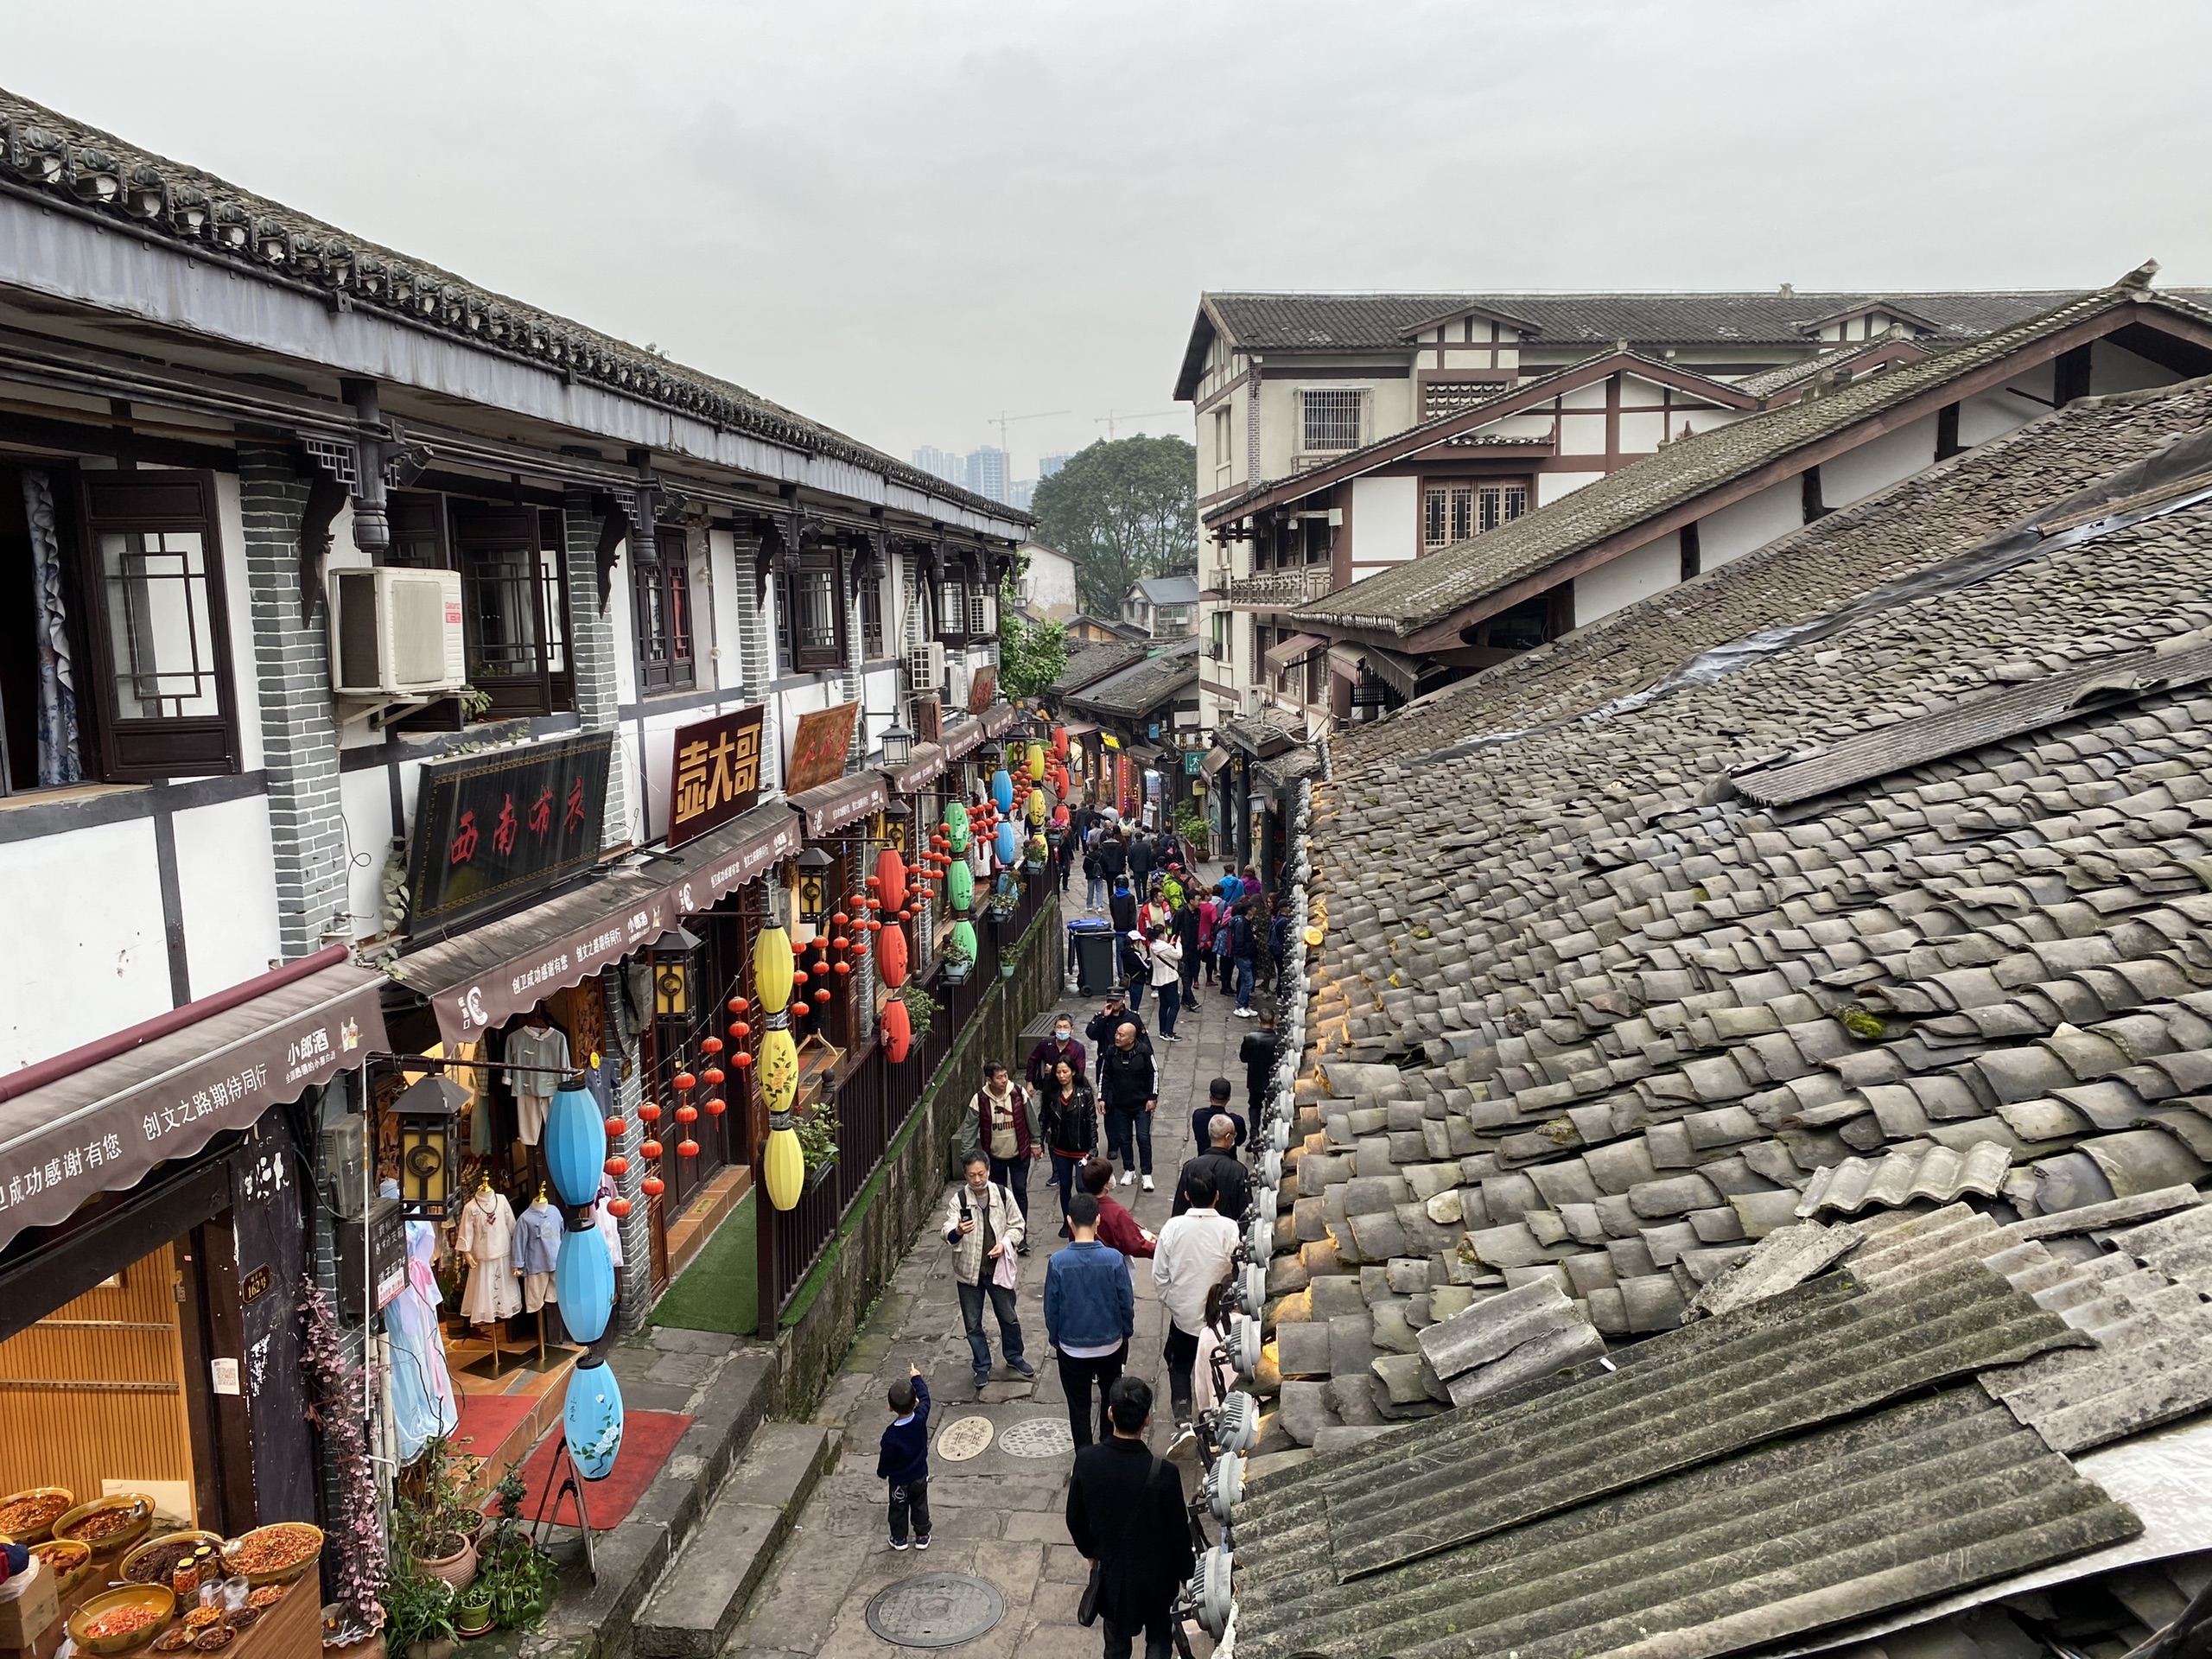 一条石板路，千年磁器口，是重庆古城的缩影和象征，被赞誉为“小重庆”，除了人多没毛病